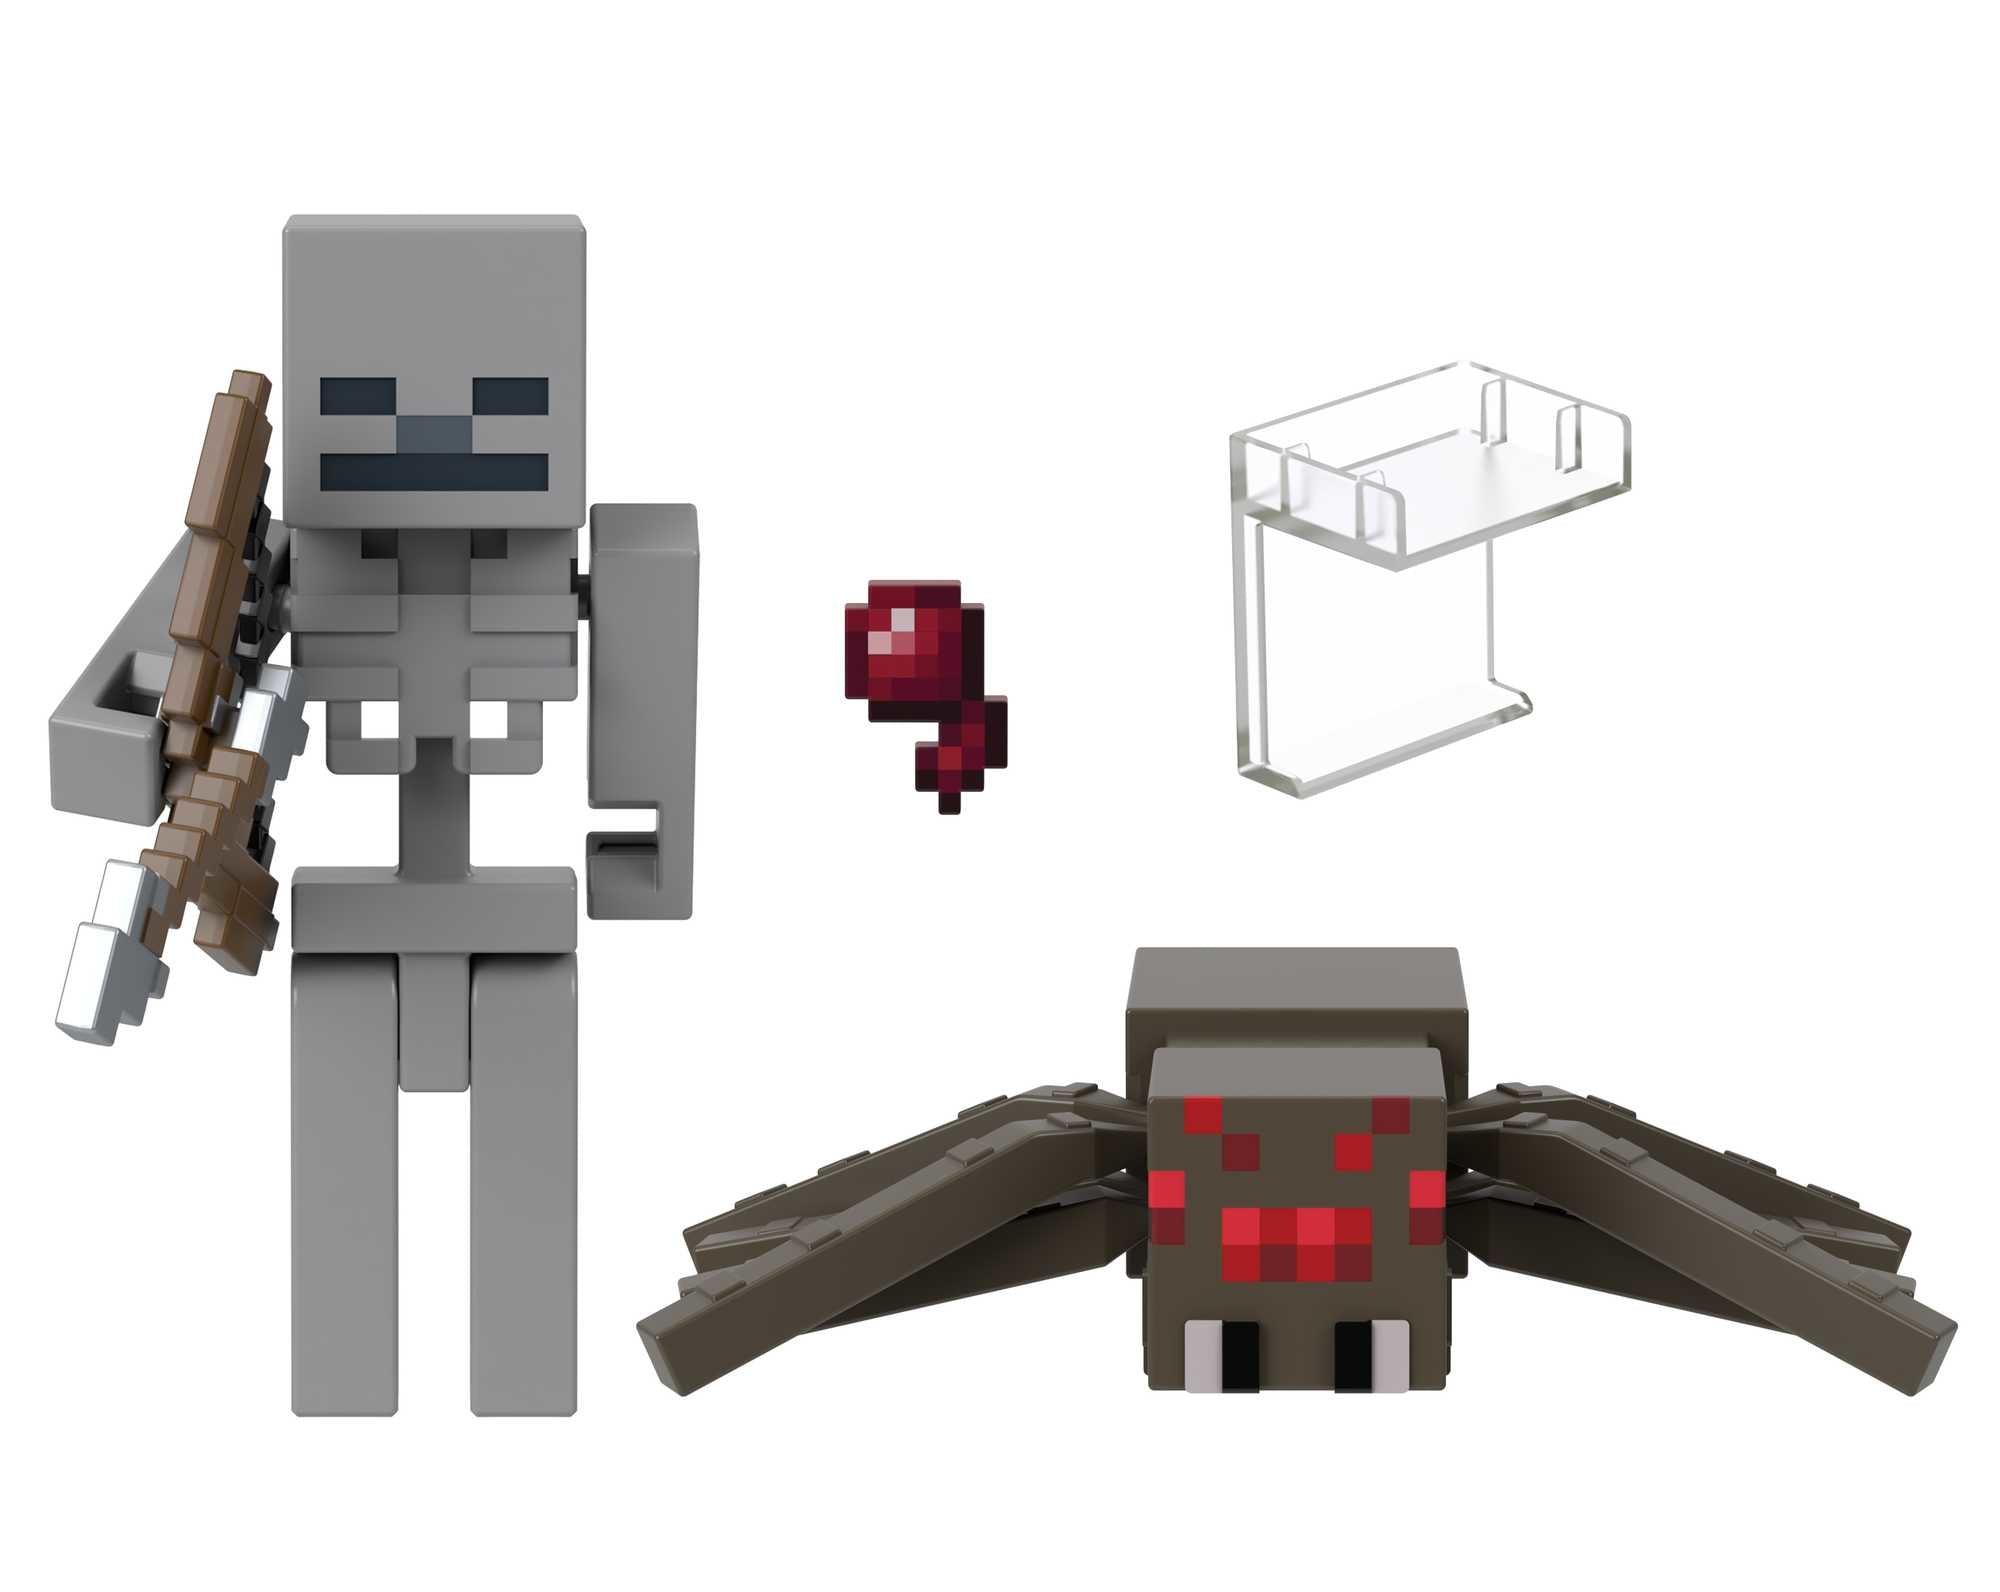 Minecraft – Skeleton Spiders Jockey 2 pack (GTT53)